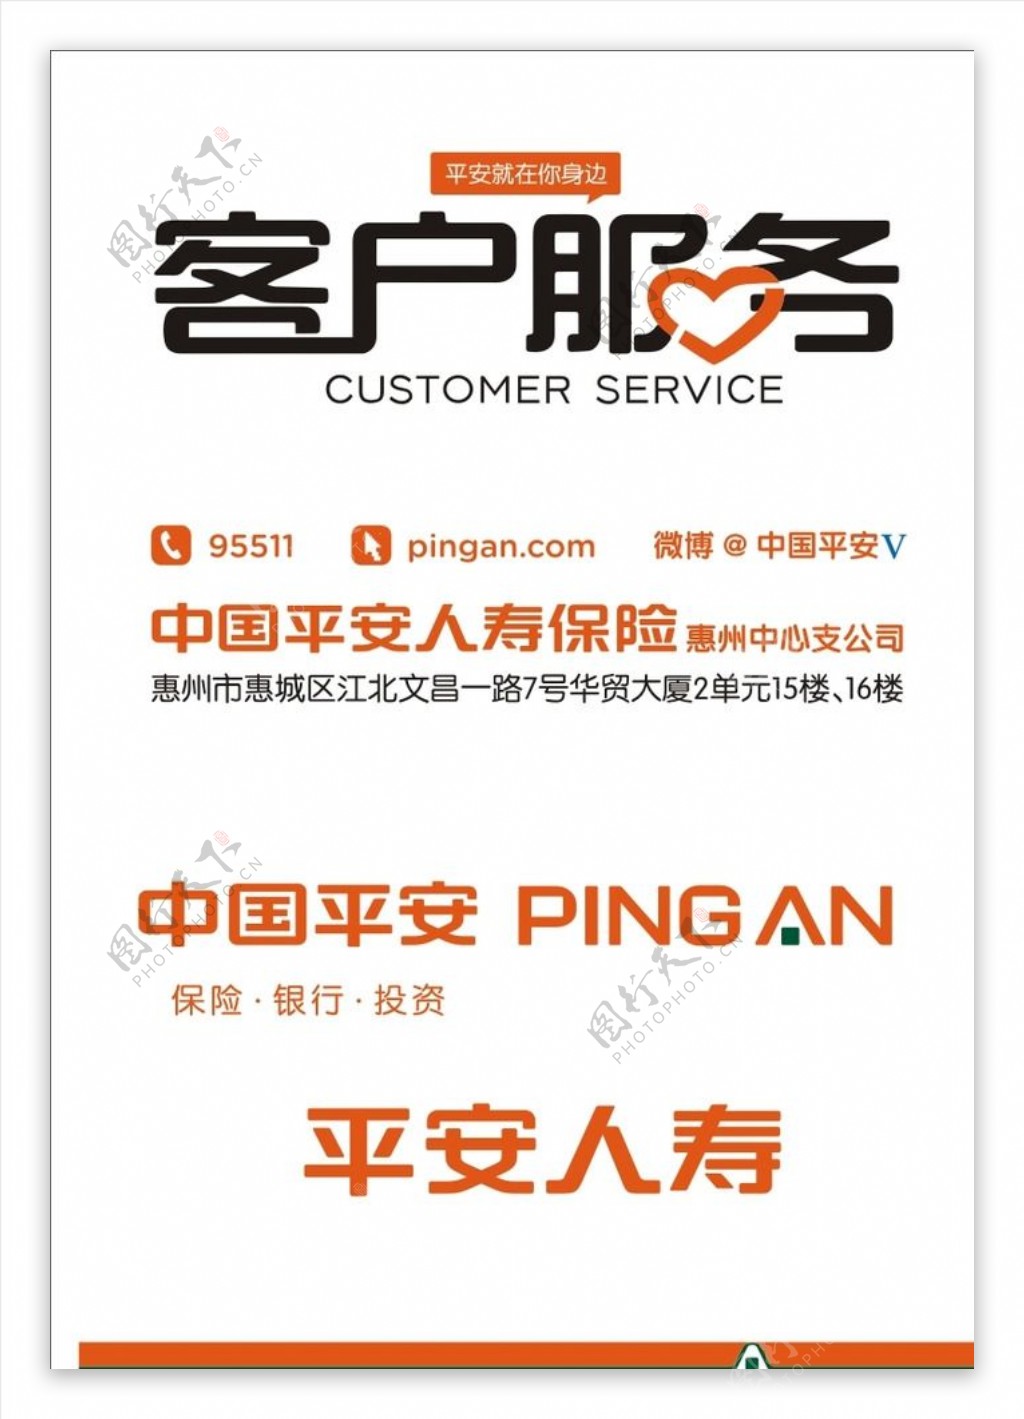 中国平安客户服务